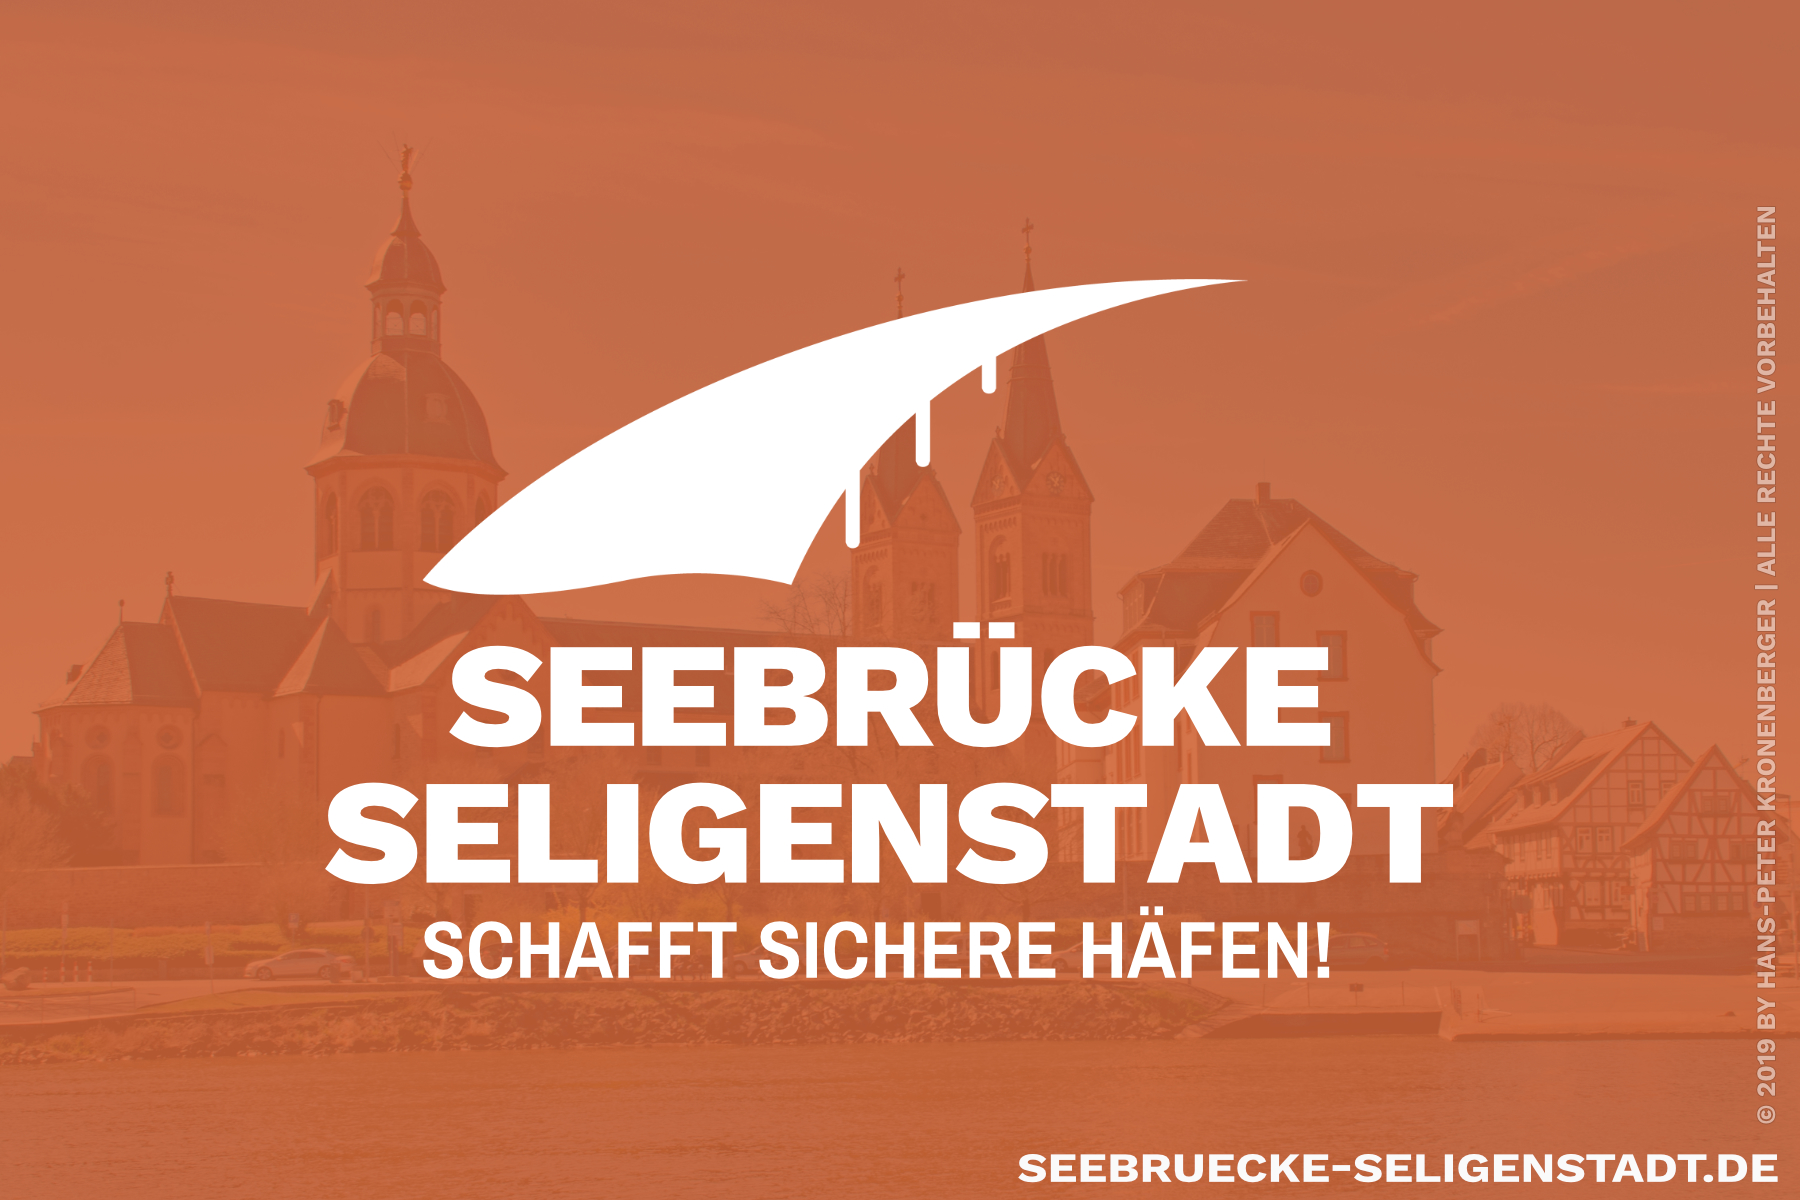 (c) Seebruecke-seligenstadt.de